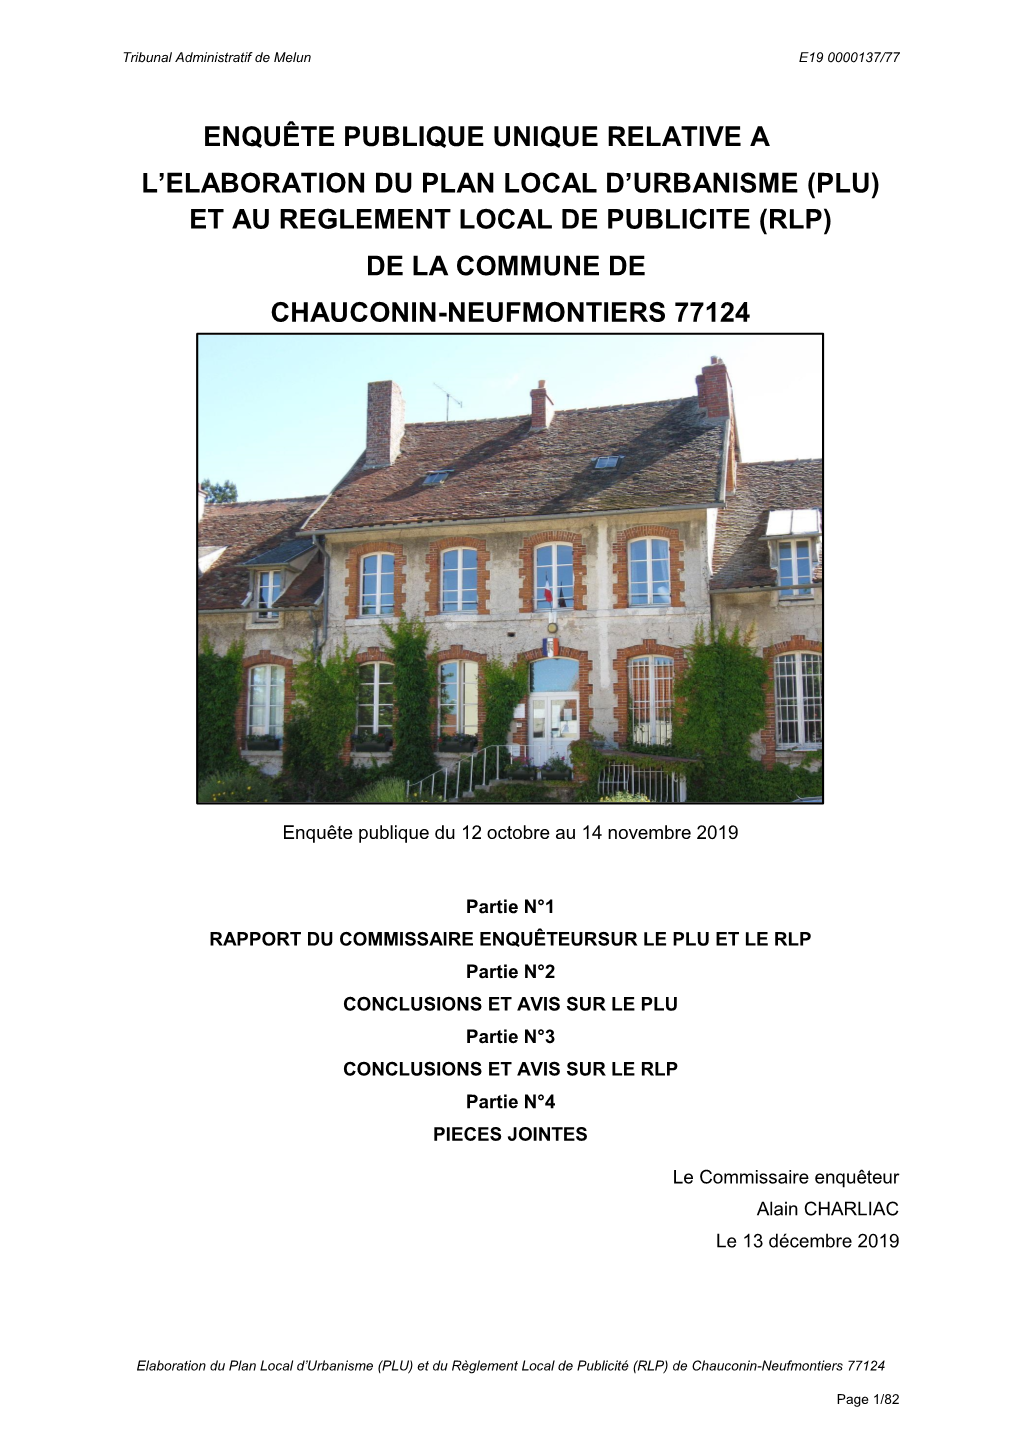 (Plu) Et Au Reglement Local De Publicite (Rlp) De La Commune De Chauconin-Neufmontiers 77124